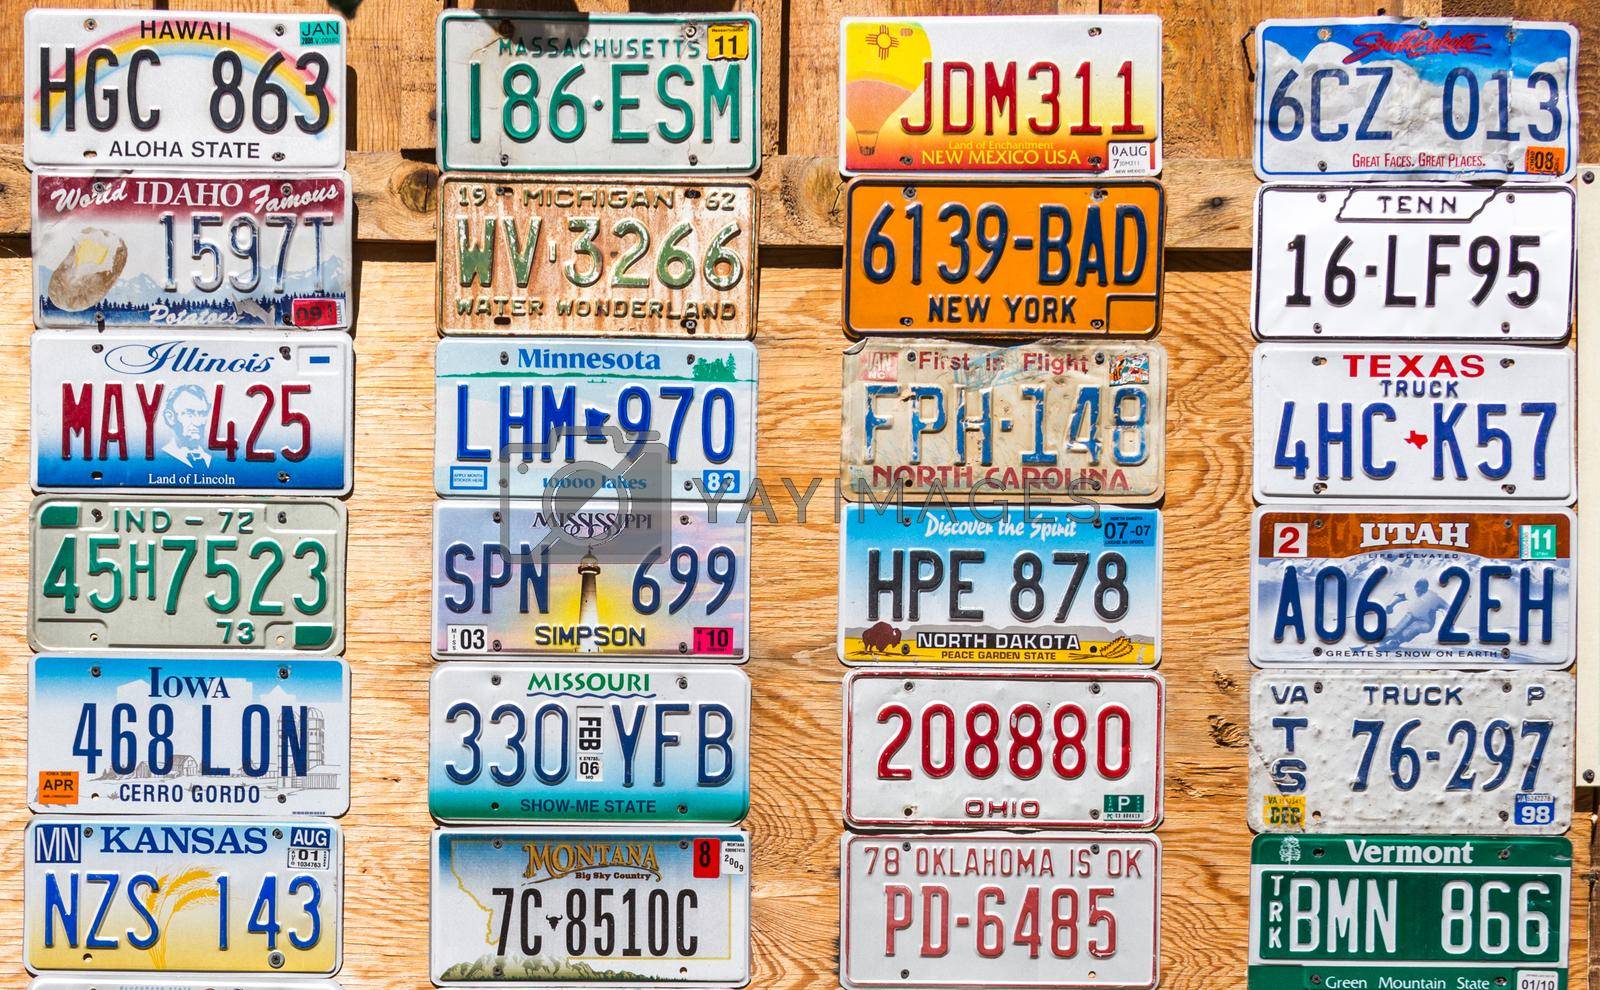 KANAB, UTAH, USA - MAY 25, 2015: License Plates Collage in public place in Kanab Utah USA